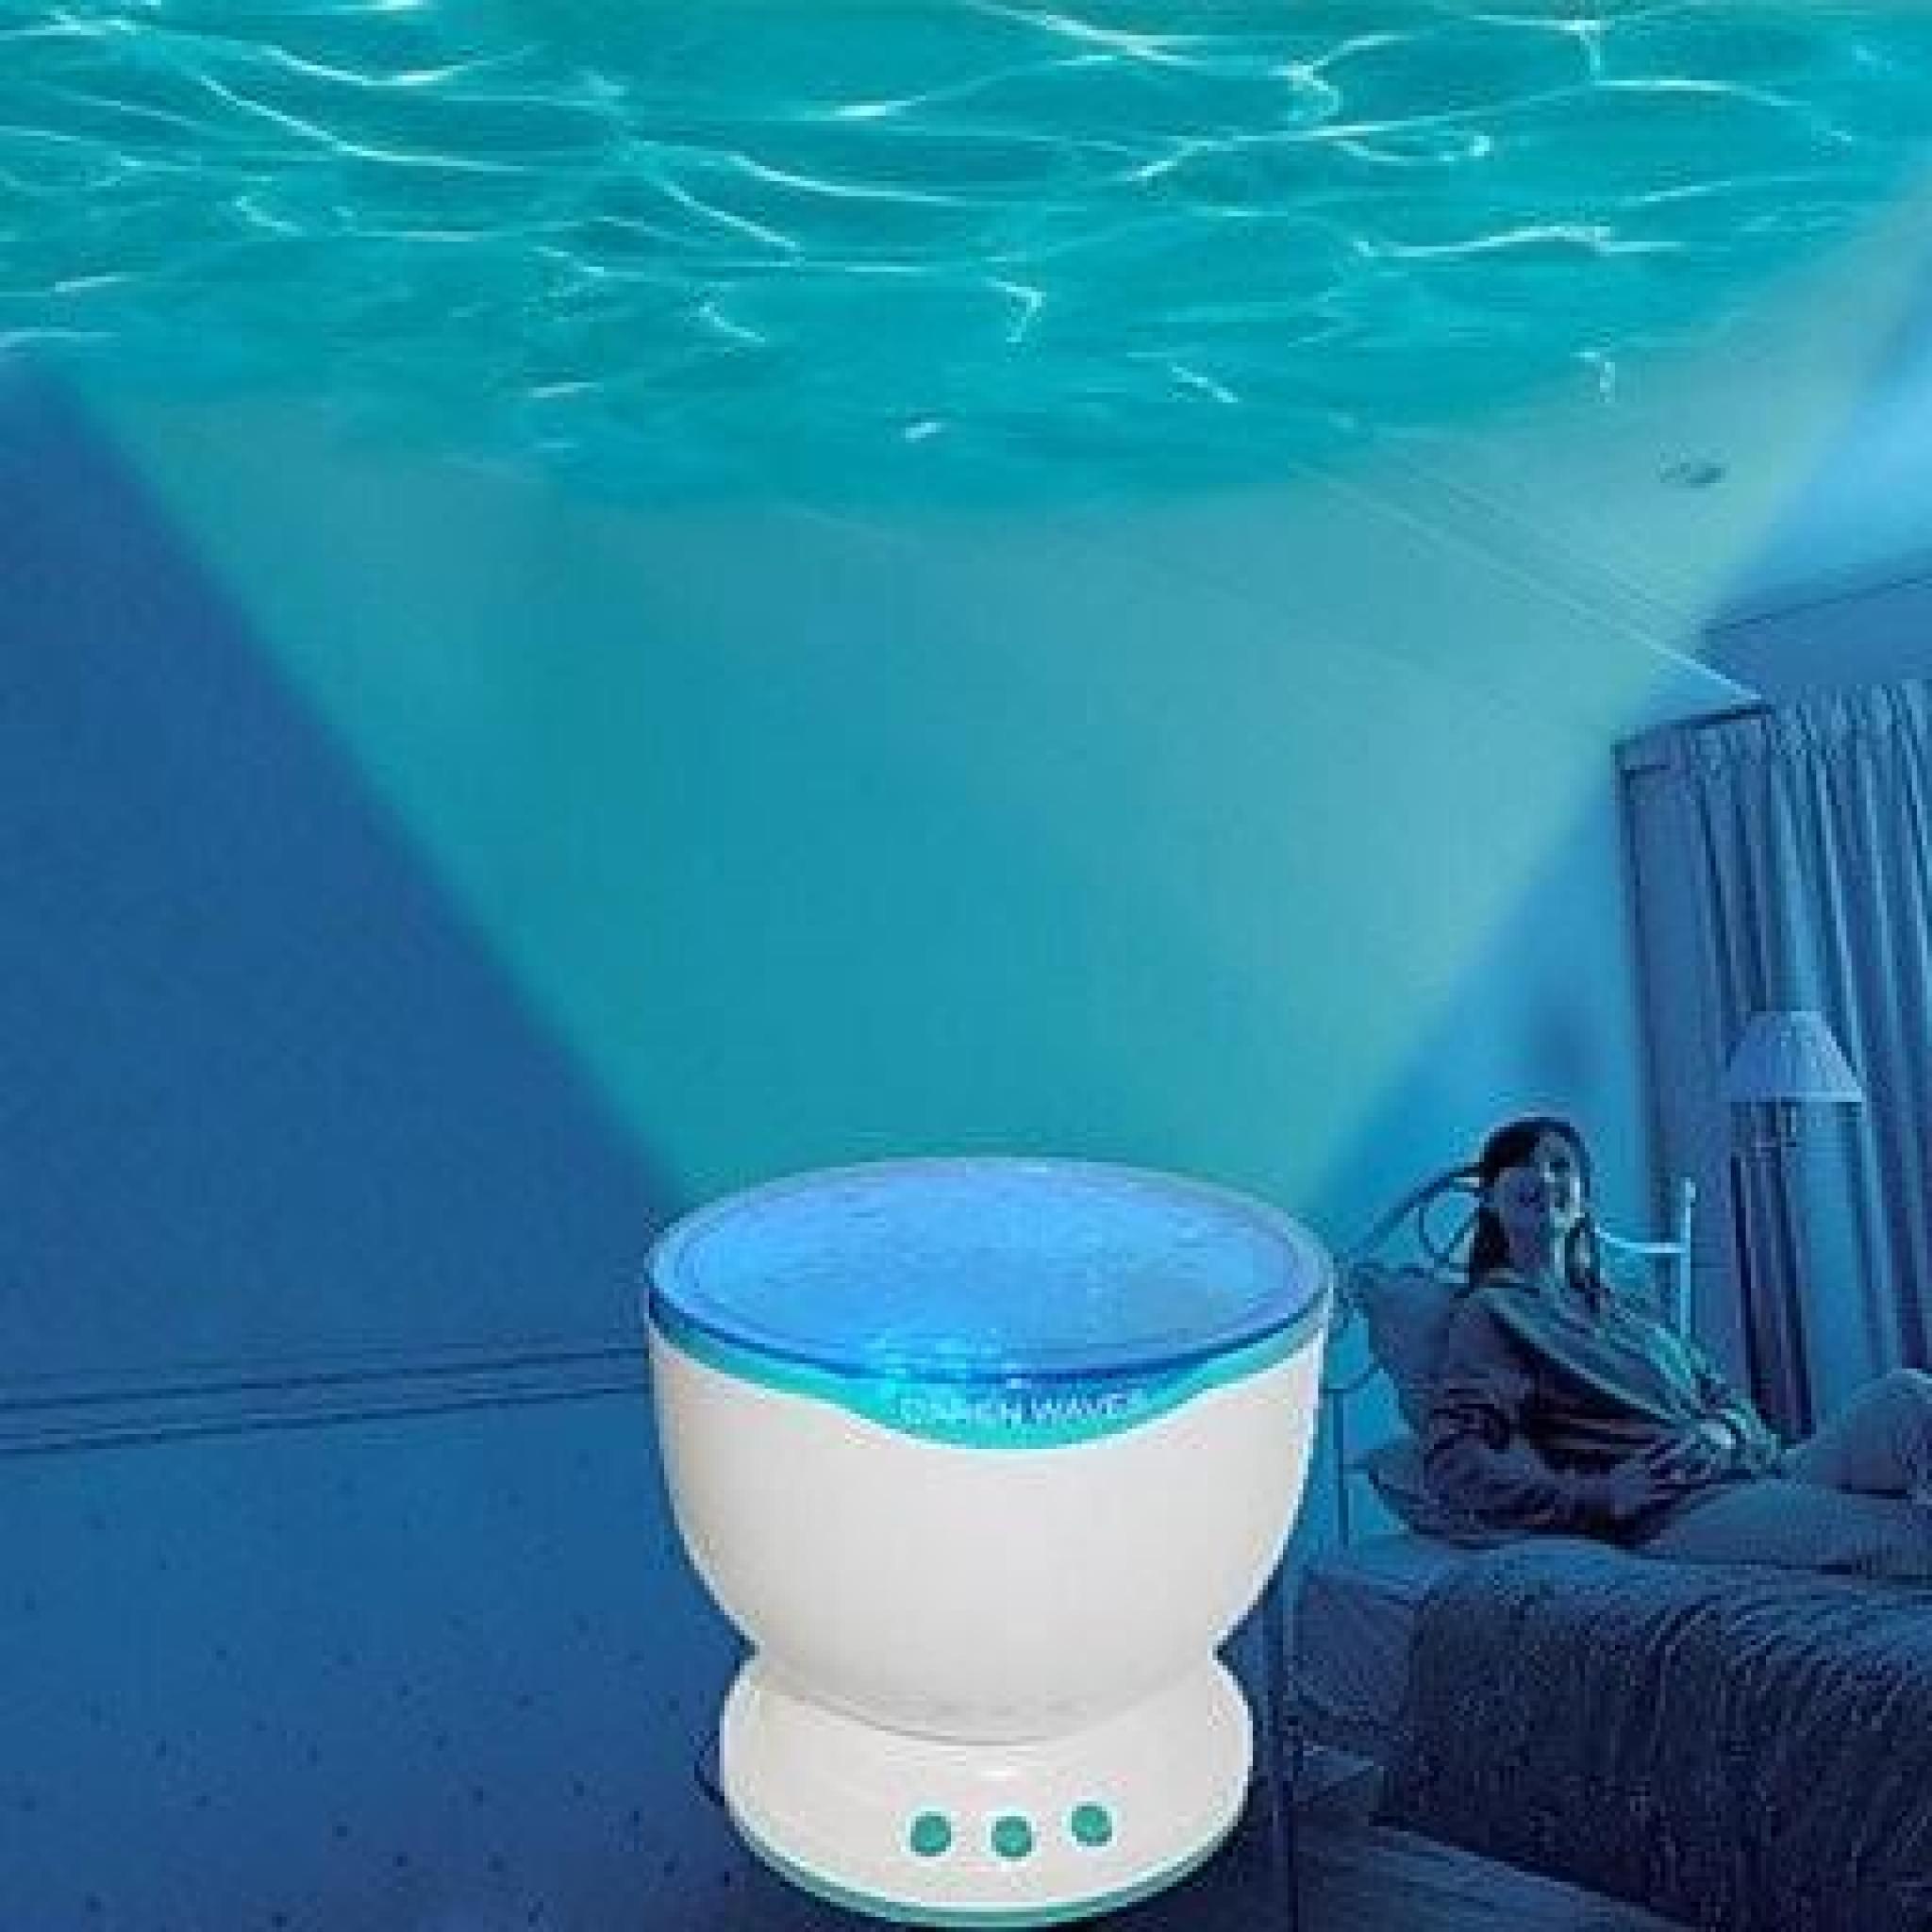 Night Light projecteur océan bleu mer vagues Projection lampe de LED avec haut-parleur pas cher